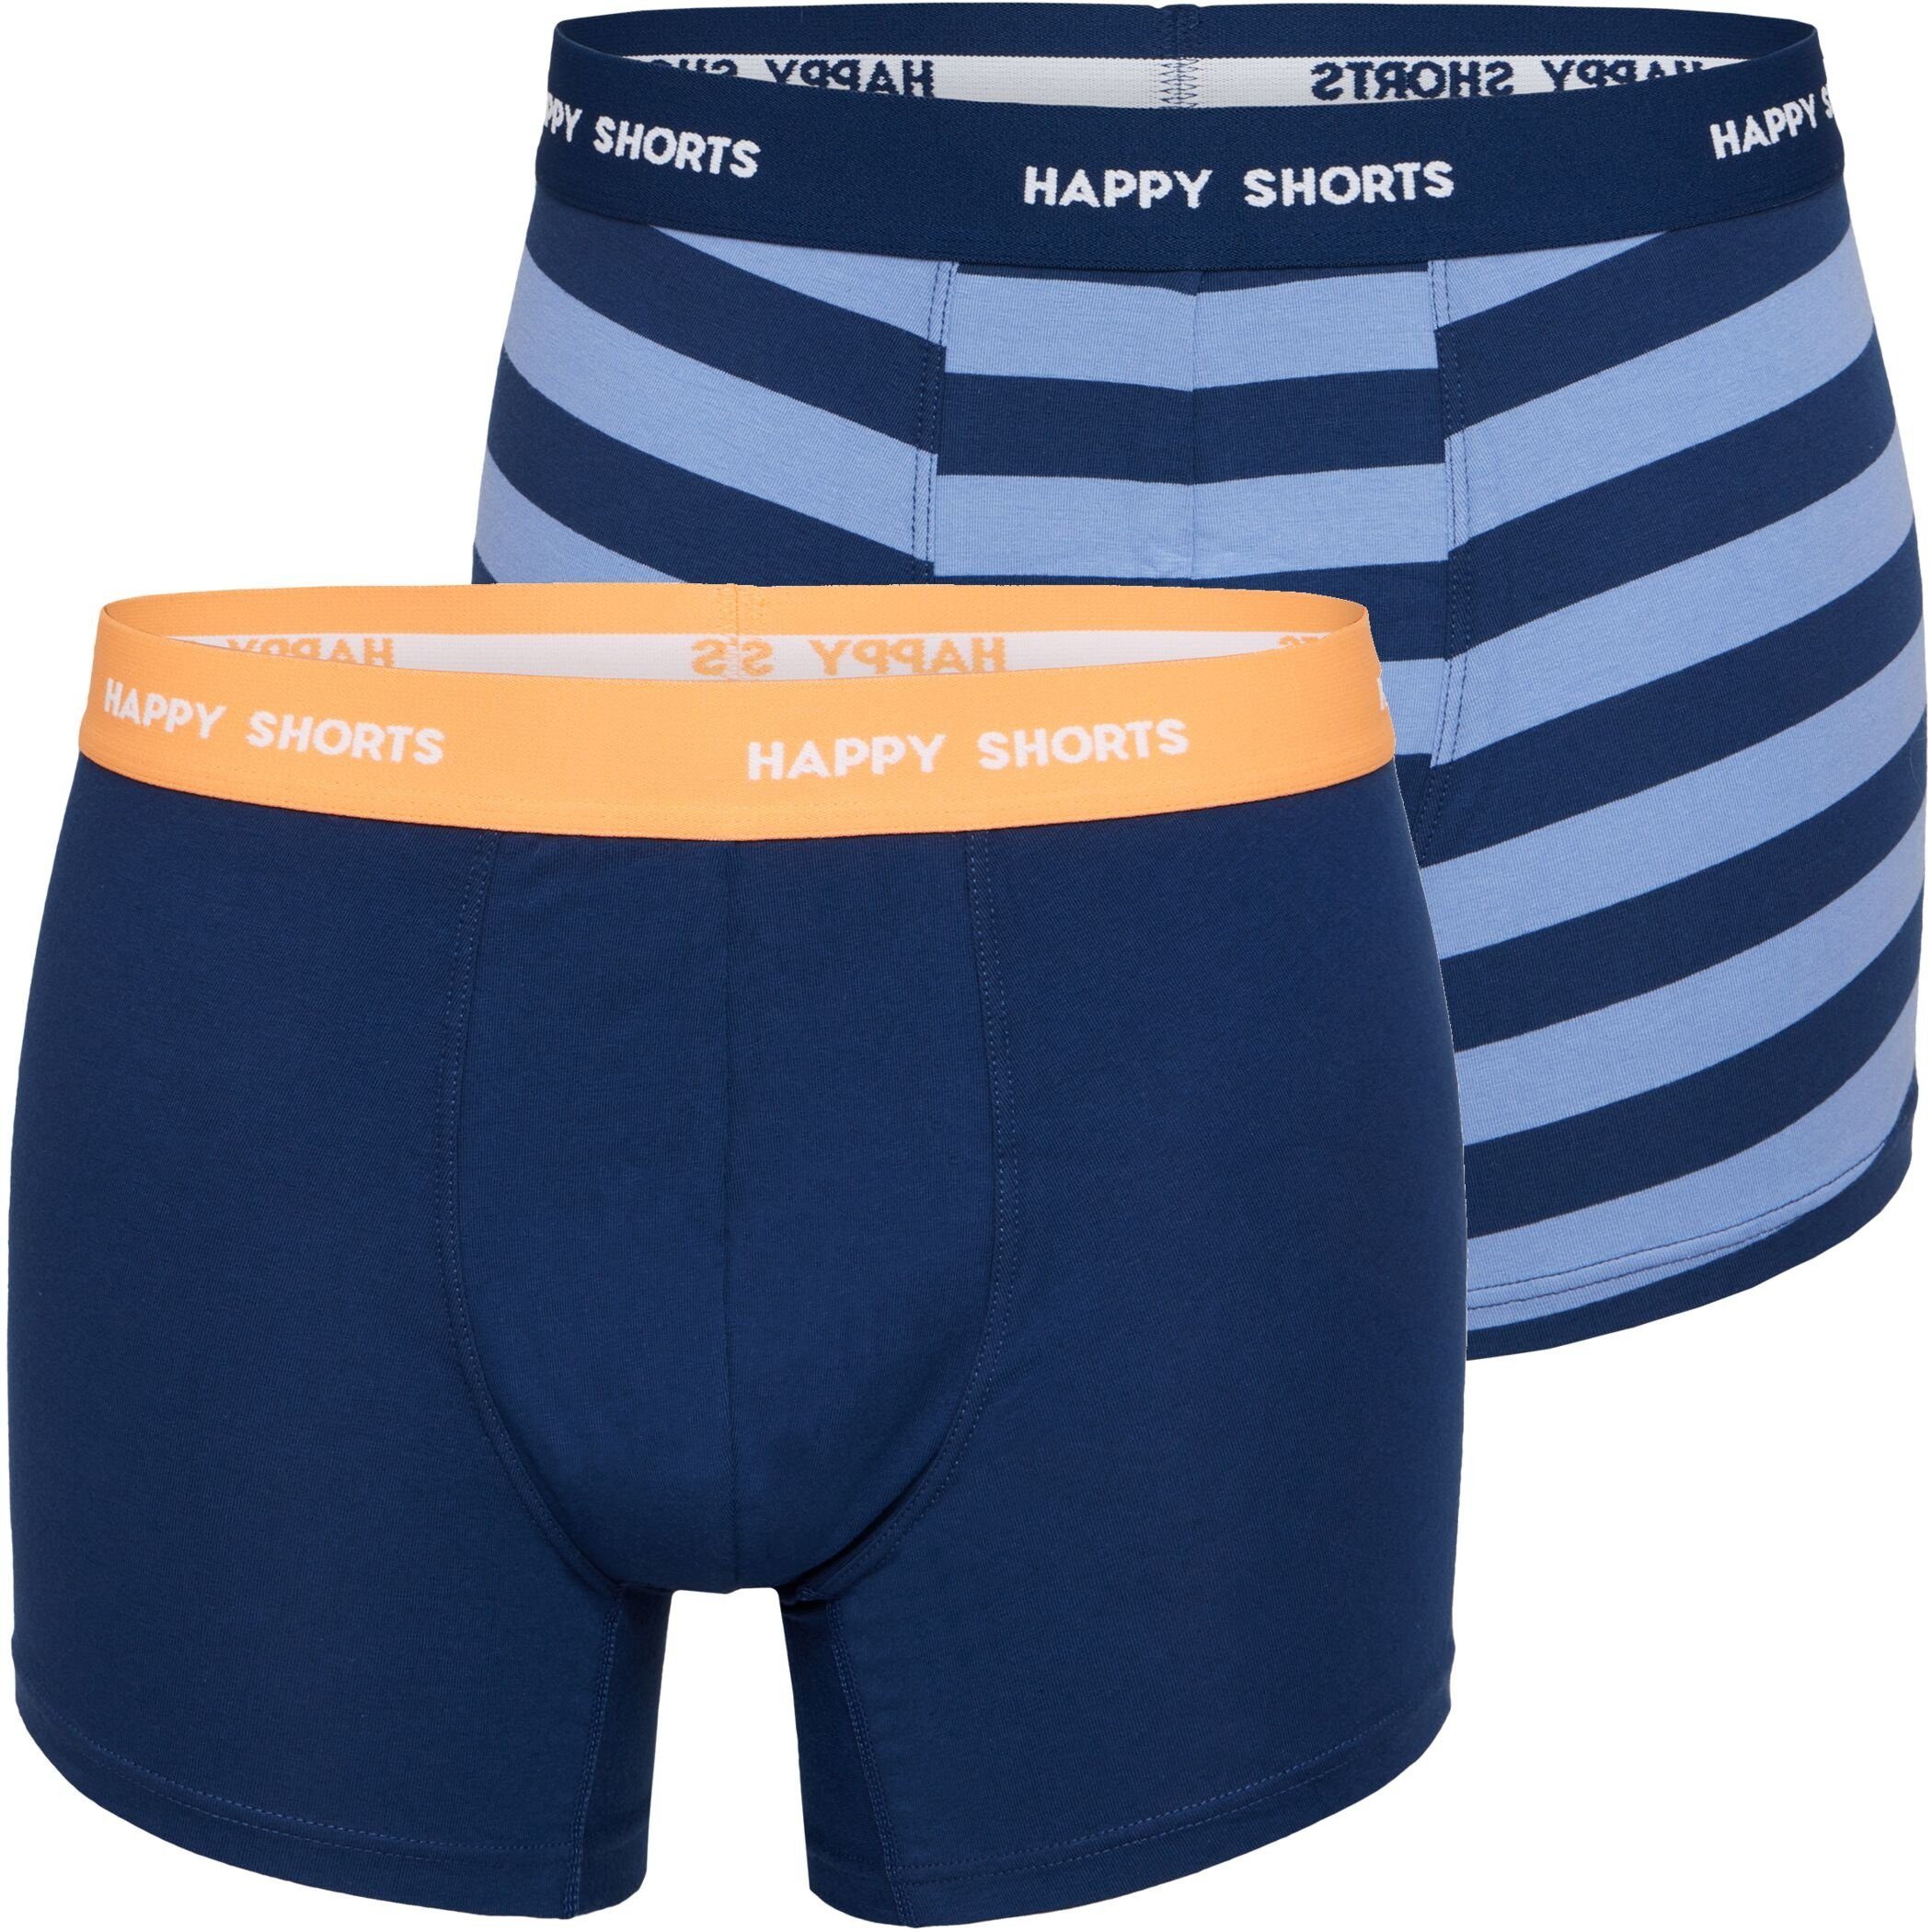 (1-St) Pant Happy Trunk Herren Shorts SHORTS Streifen HAPPY Trunk Boxershorts Jersey Blau 2